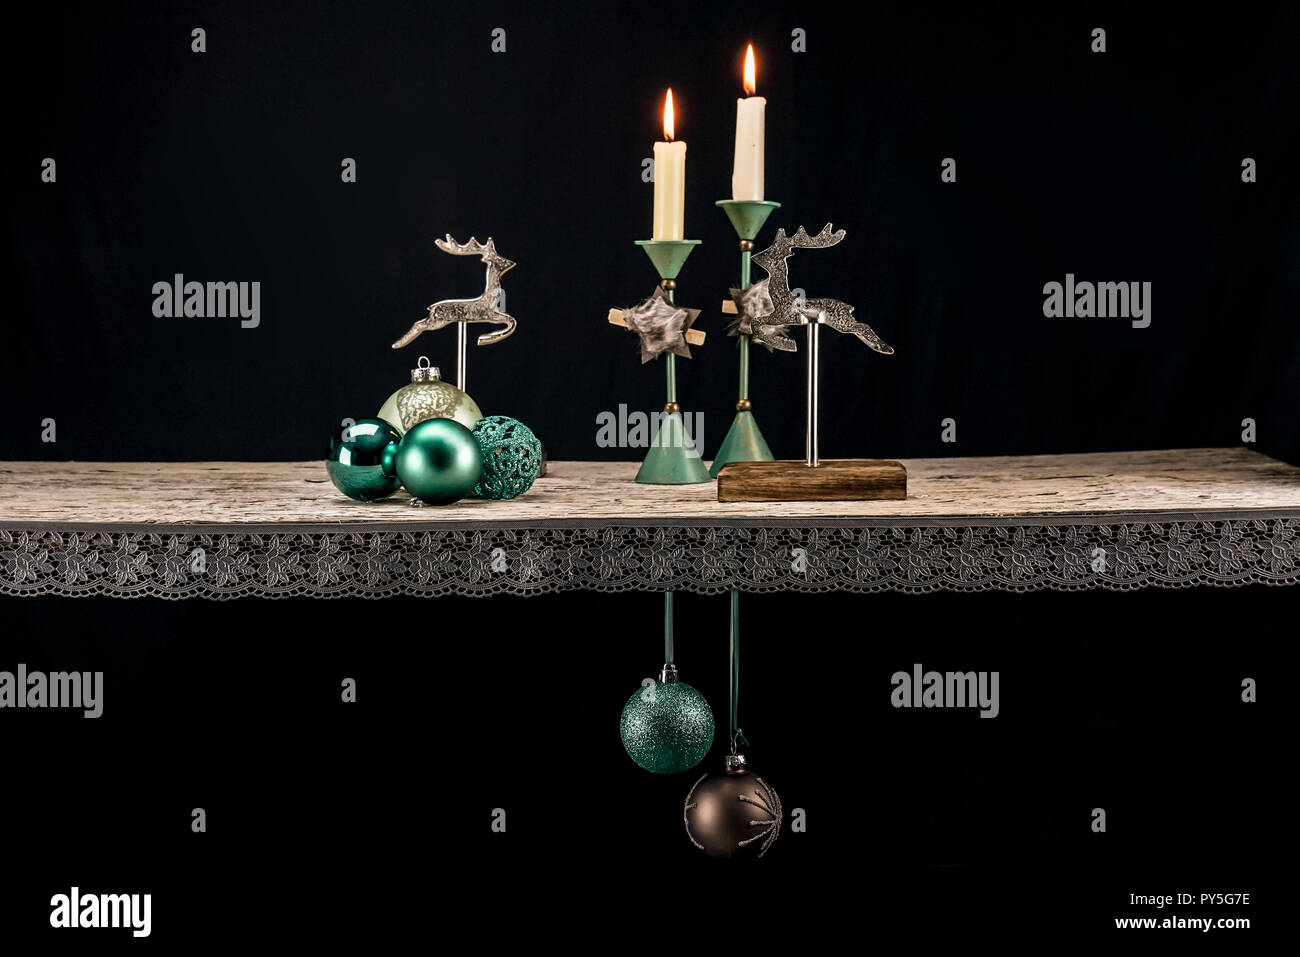 Weihnachten Dekoration Elemente in warmen, türkisfarbenen Töne vor einem dunklen Hintergrund. Neben Türkis, Dunkelbraun, holz und alten Silber schaffen eine Ch Stockfoto